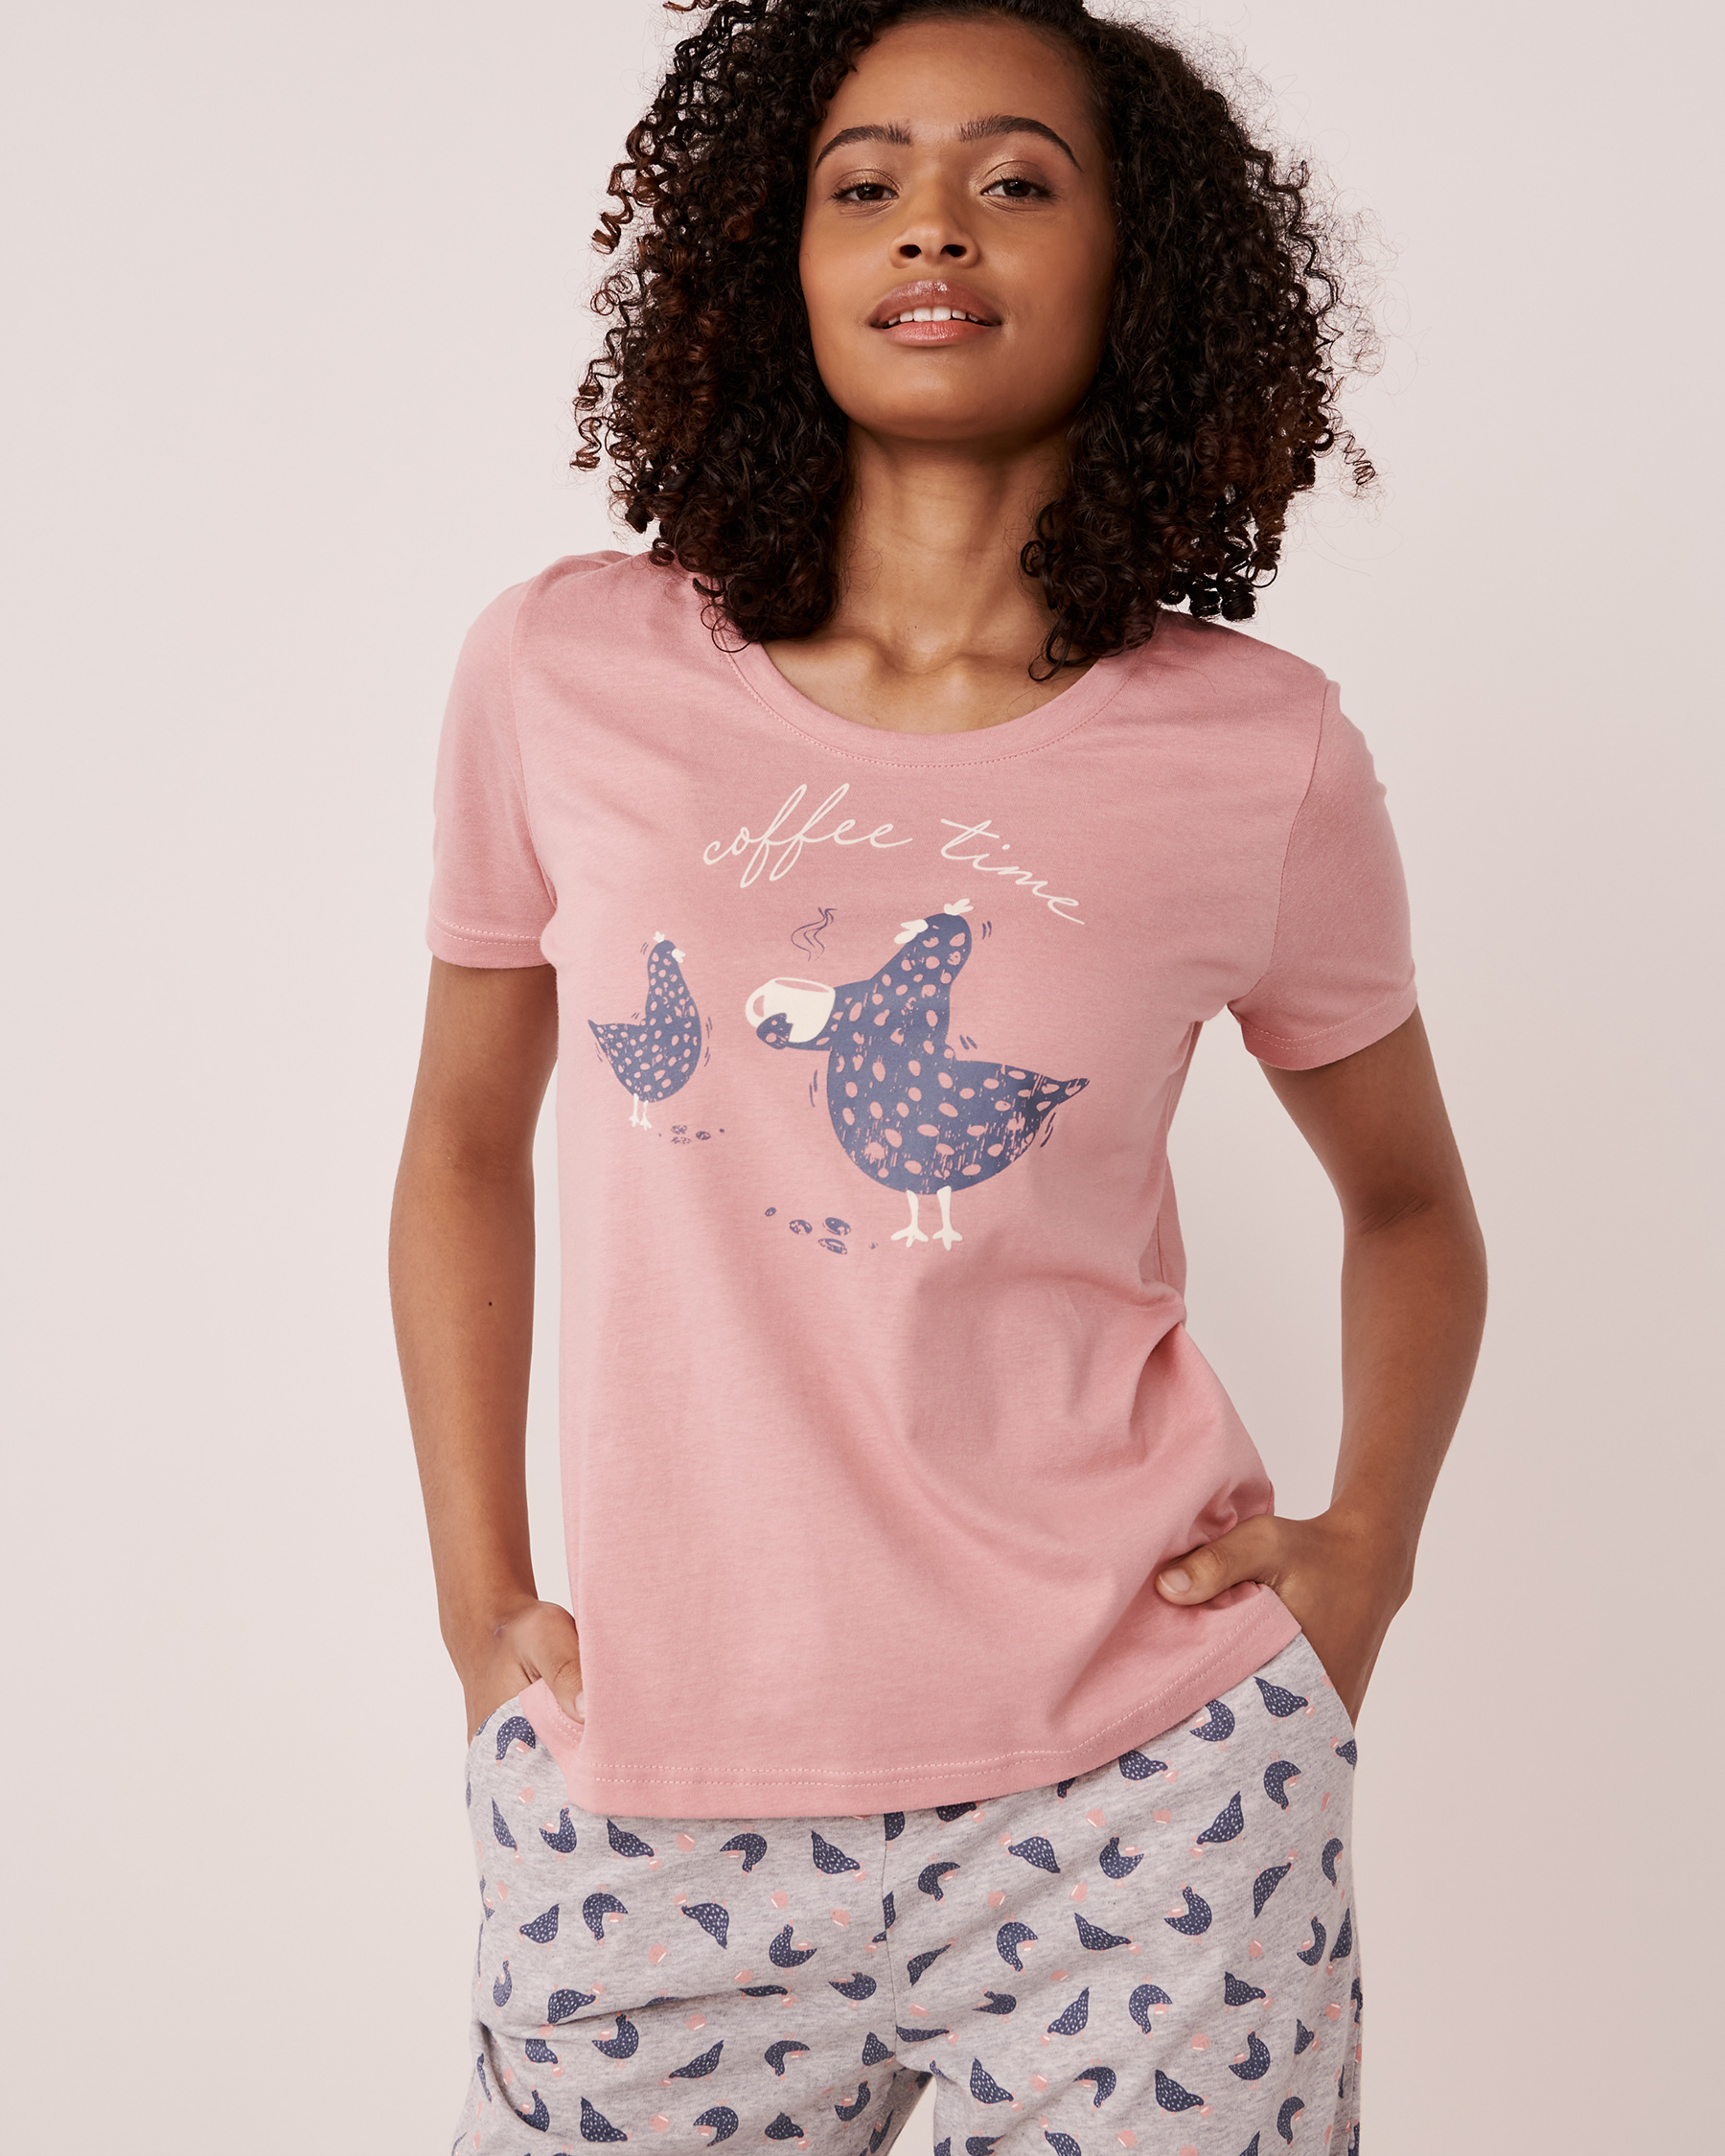 La Vie en Rose Cotton Crew Neck T-shirt. 3